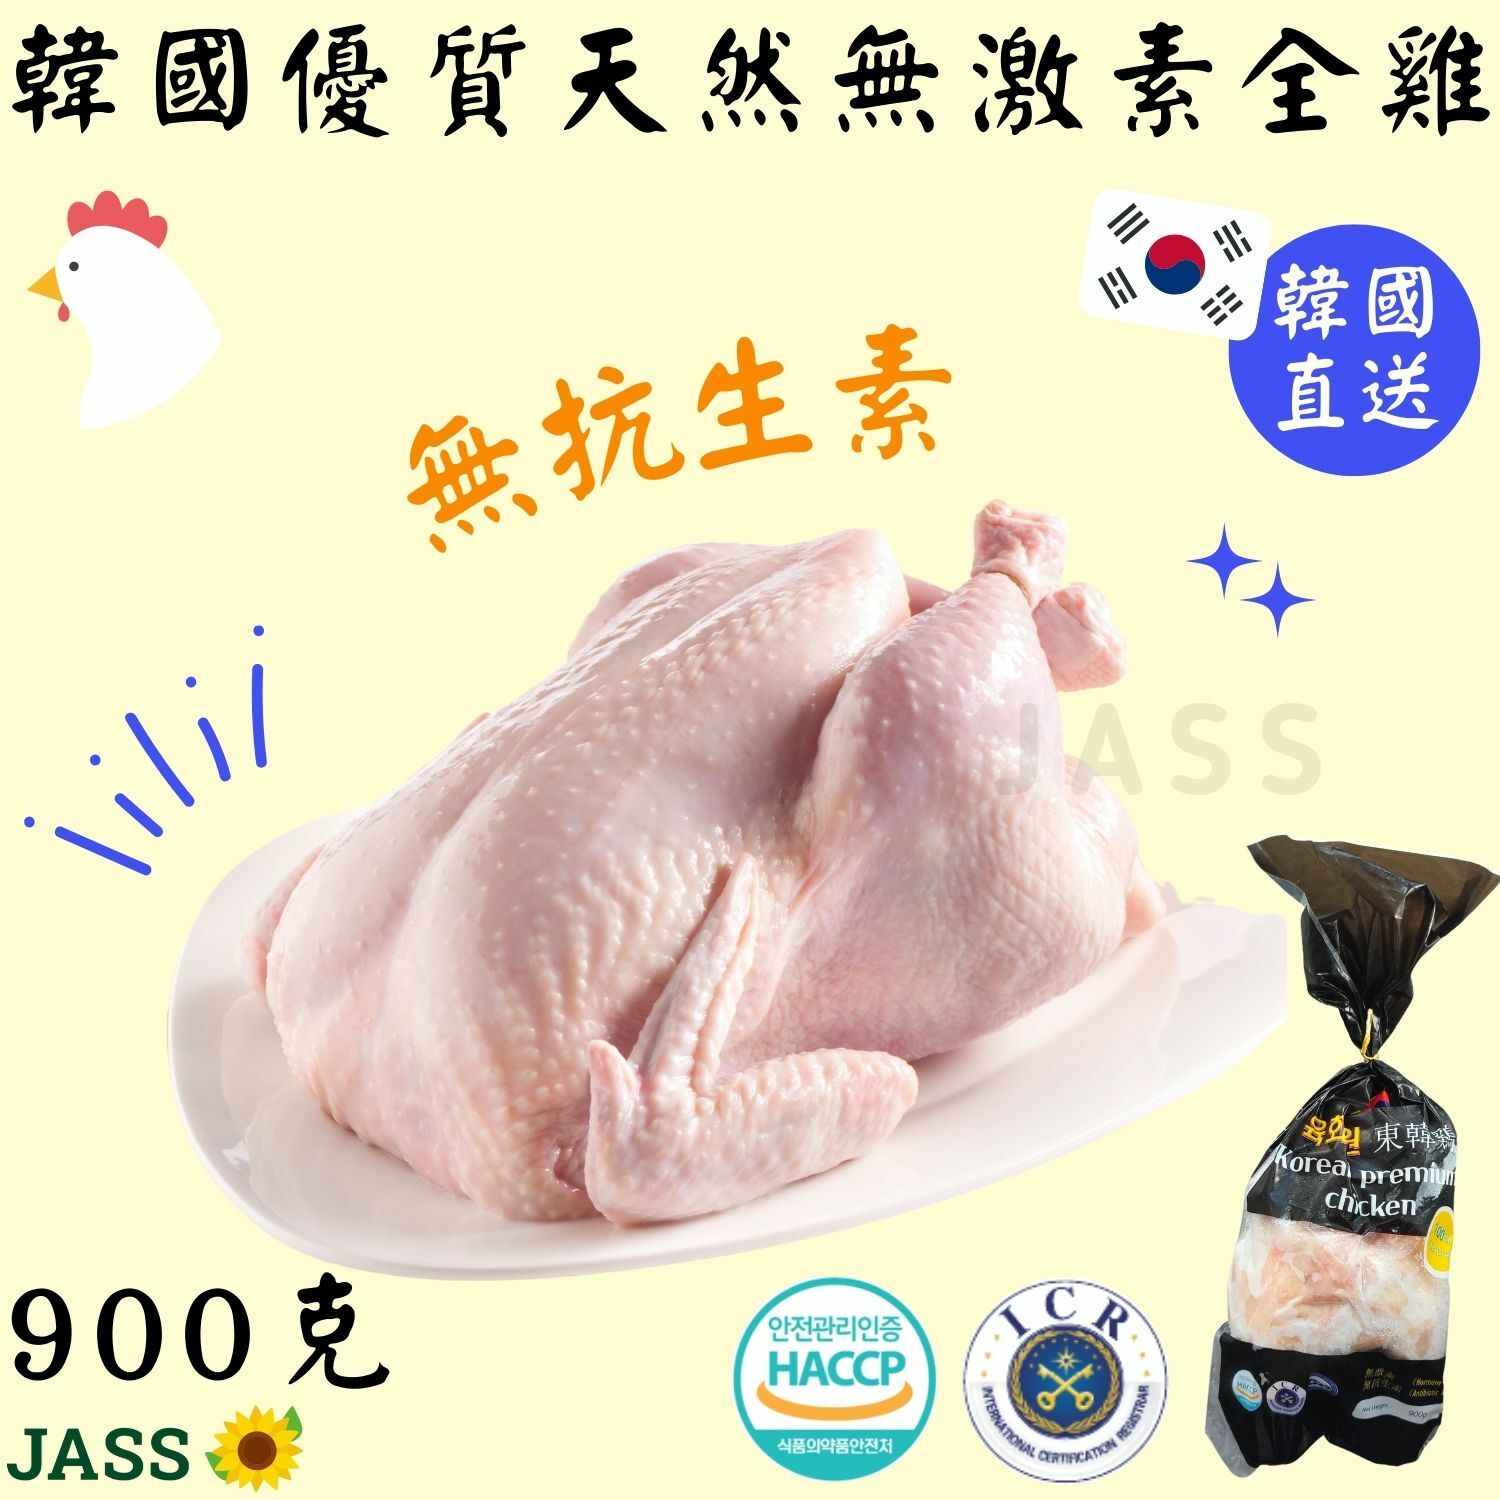 韓國食品-韓國天然無激素全雞 1000g